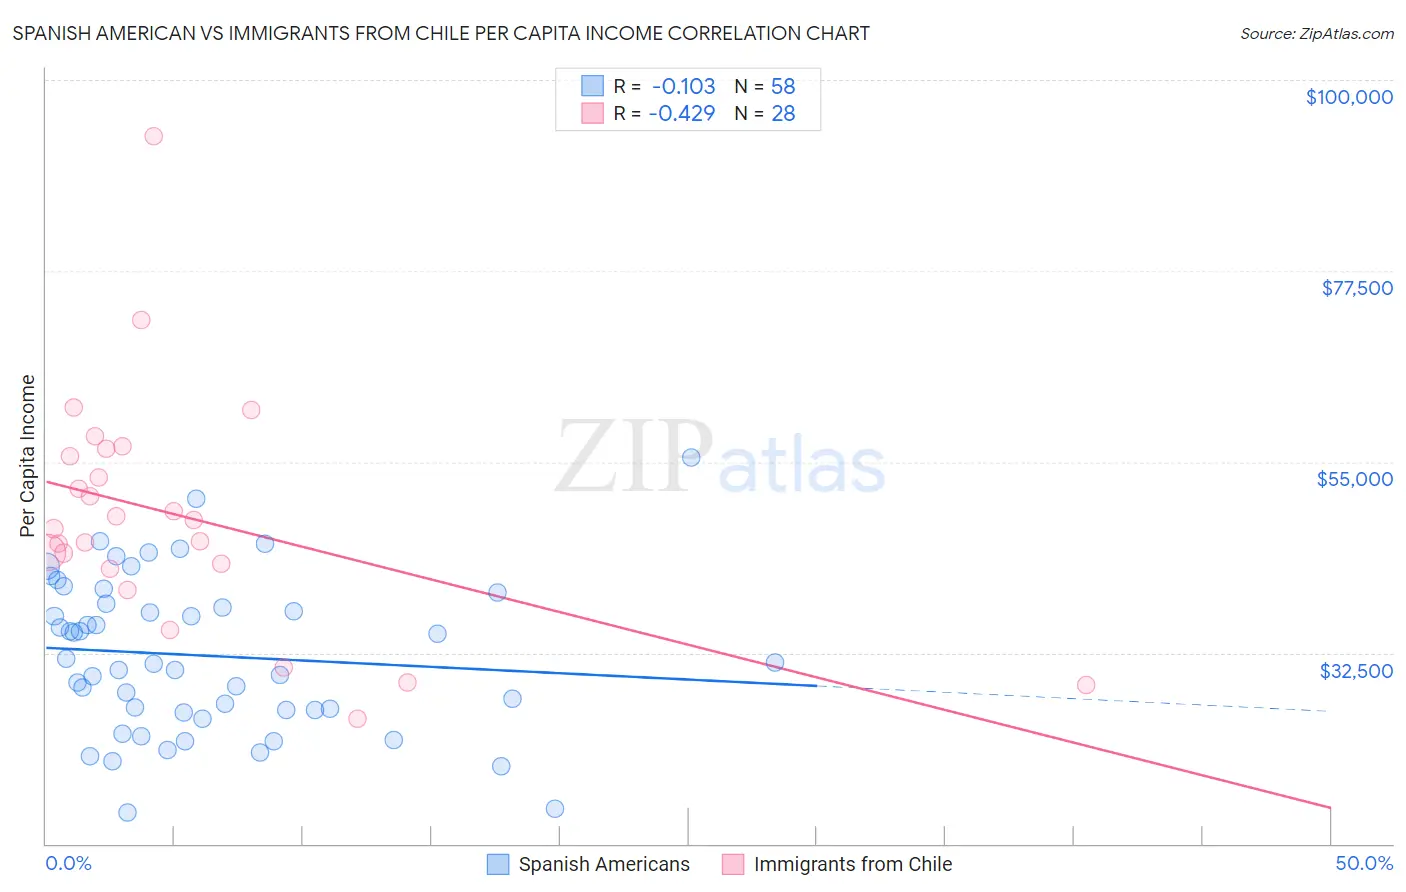 Spanish American vs Immigrants from Chile Per Capita Income